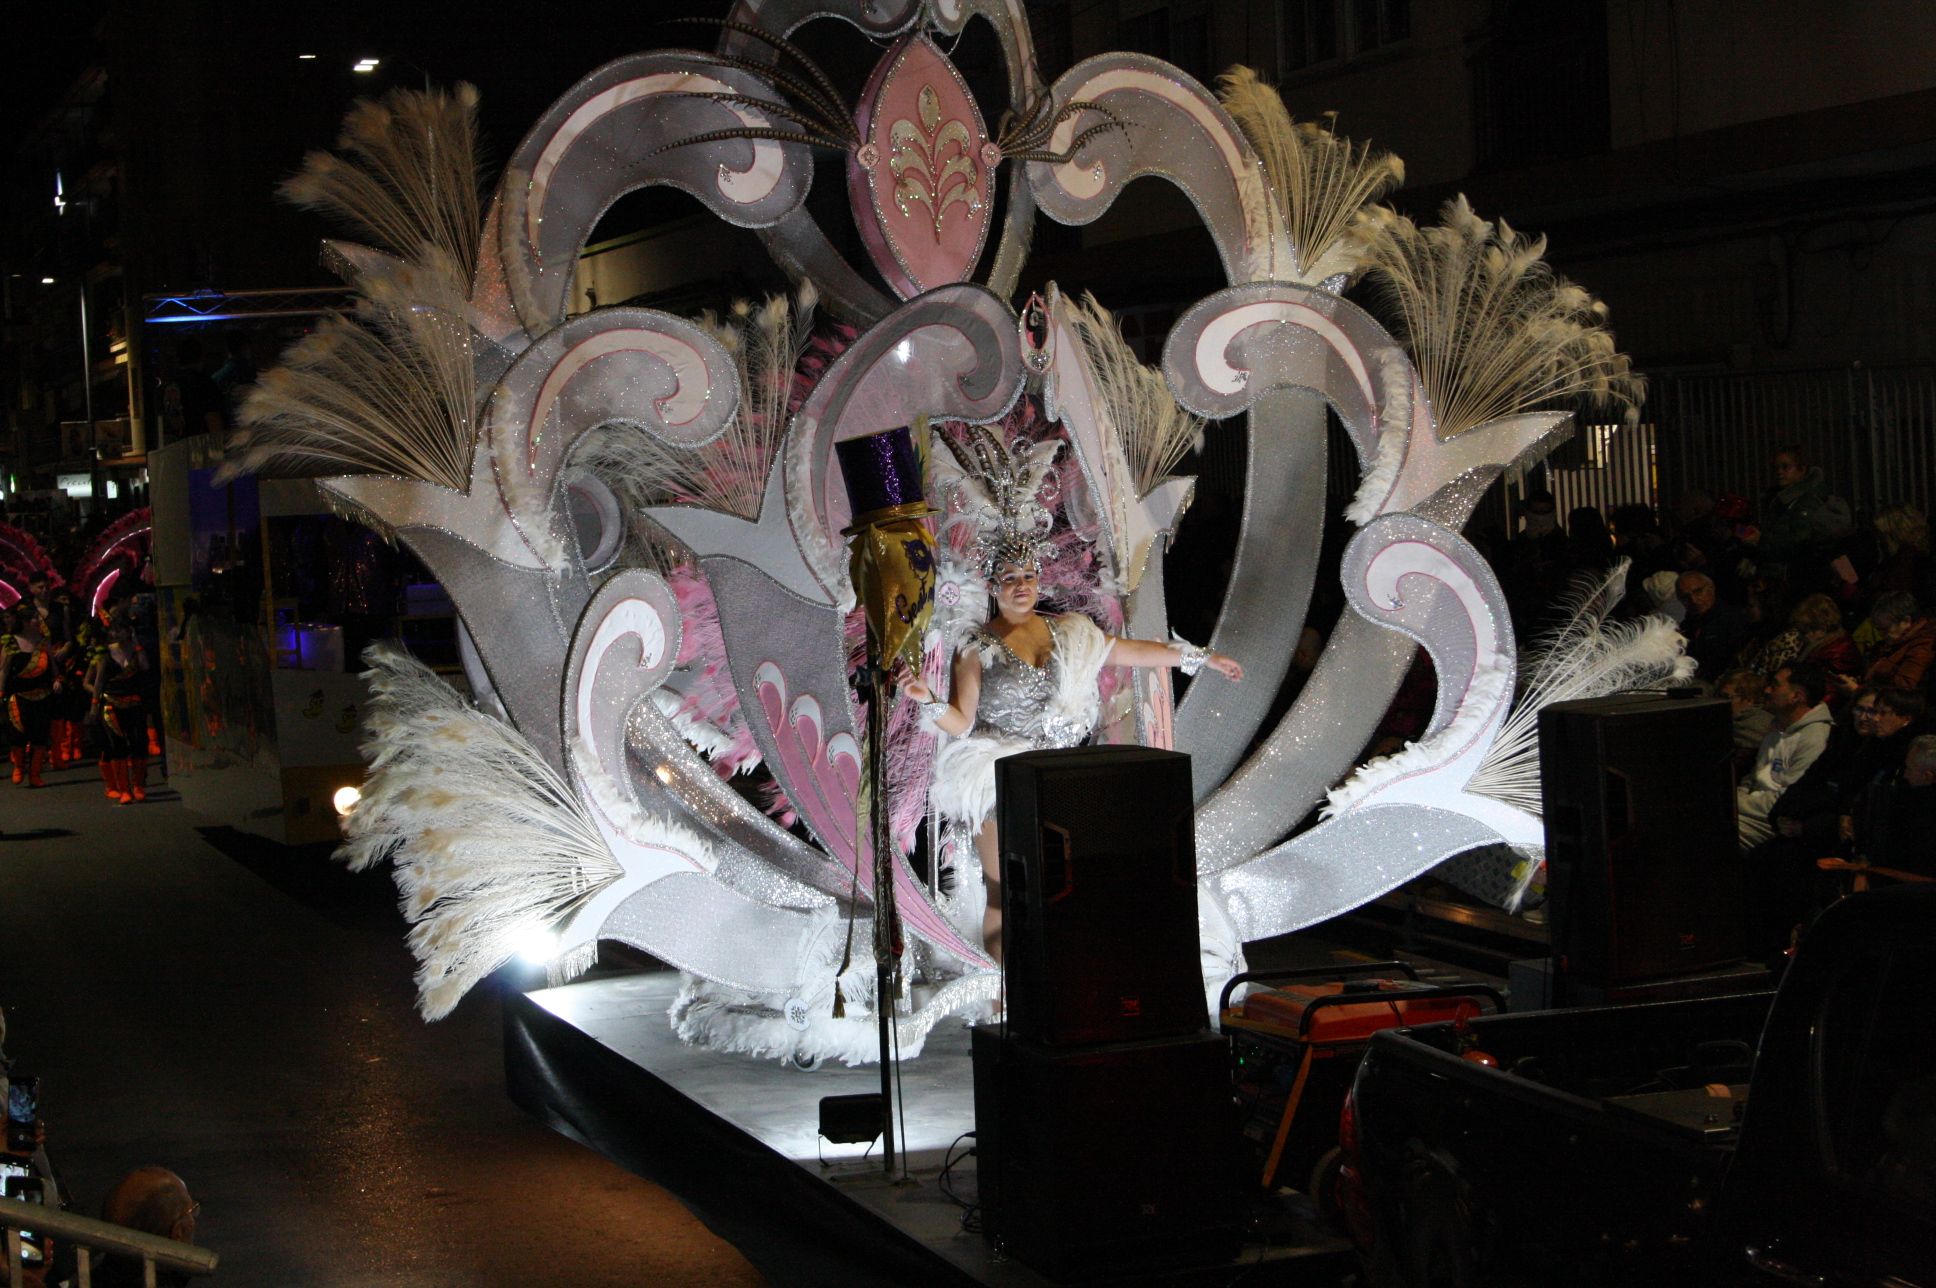 Macrogalería de fotos del primer gran desfile del Carnaval de Vinaròs